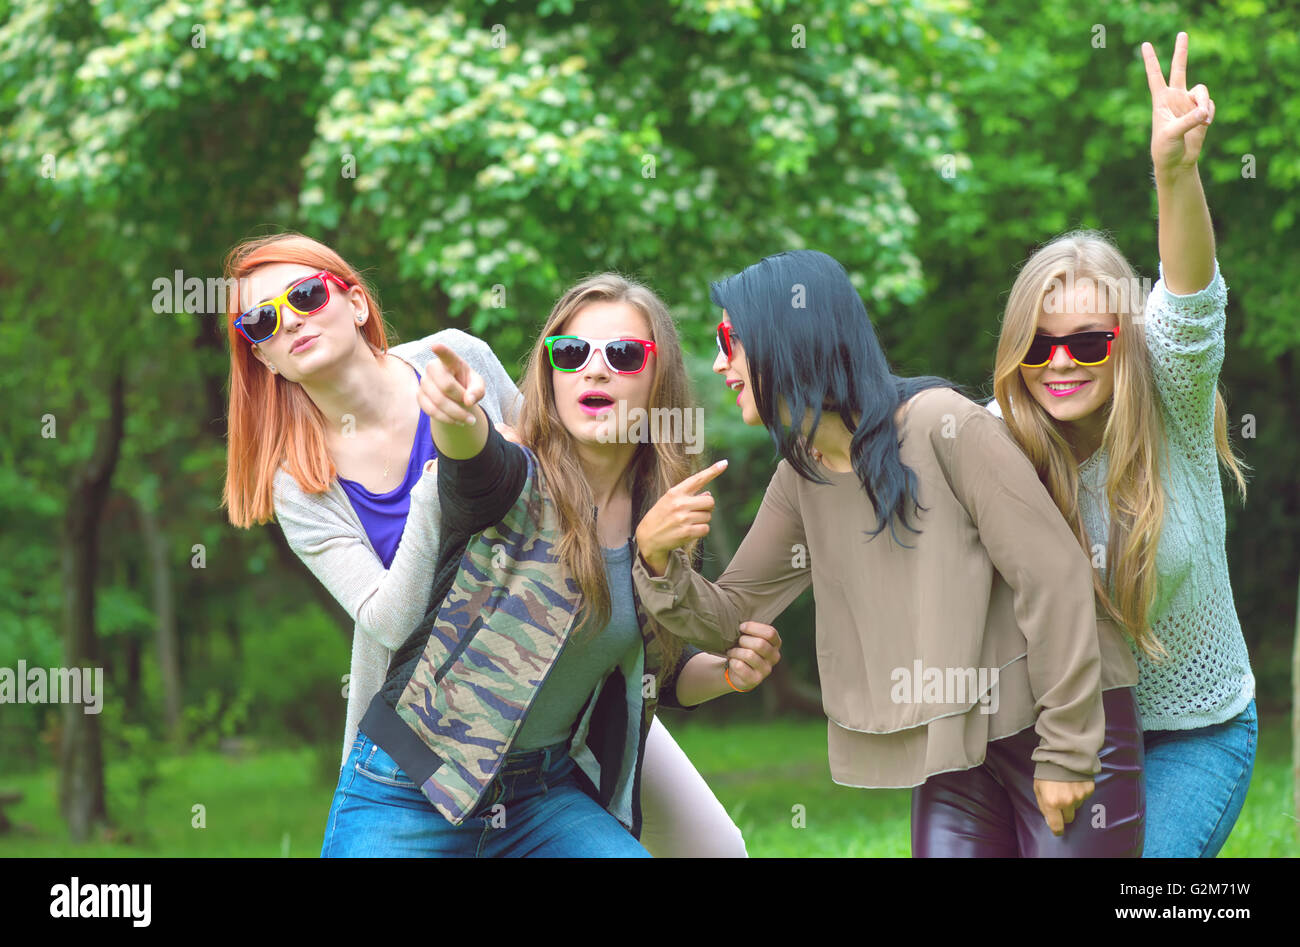 Happy amici in posa insieme su una giornata d'estate Foto Stock